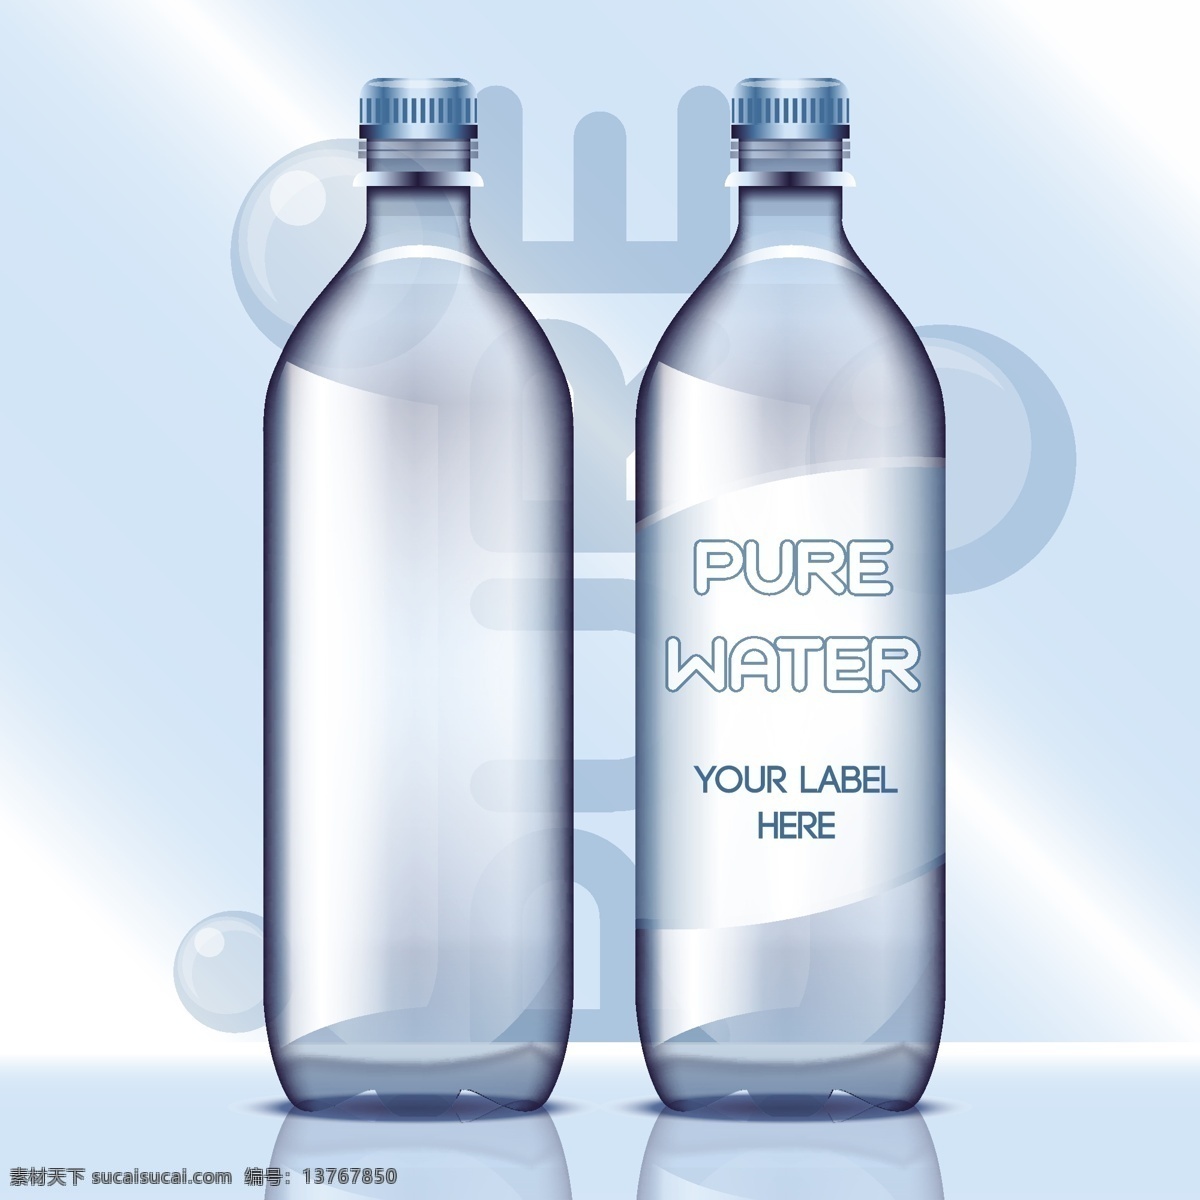 纯净水 包装设计 矢量 矿泉水包装 瓶装水 饮料包装 简约瓶身设计 透明塑料瓶 标签标贴设计